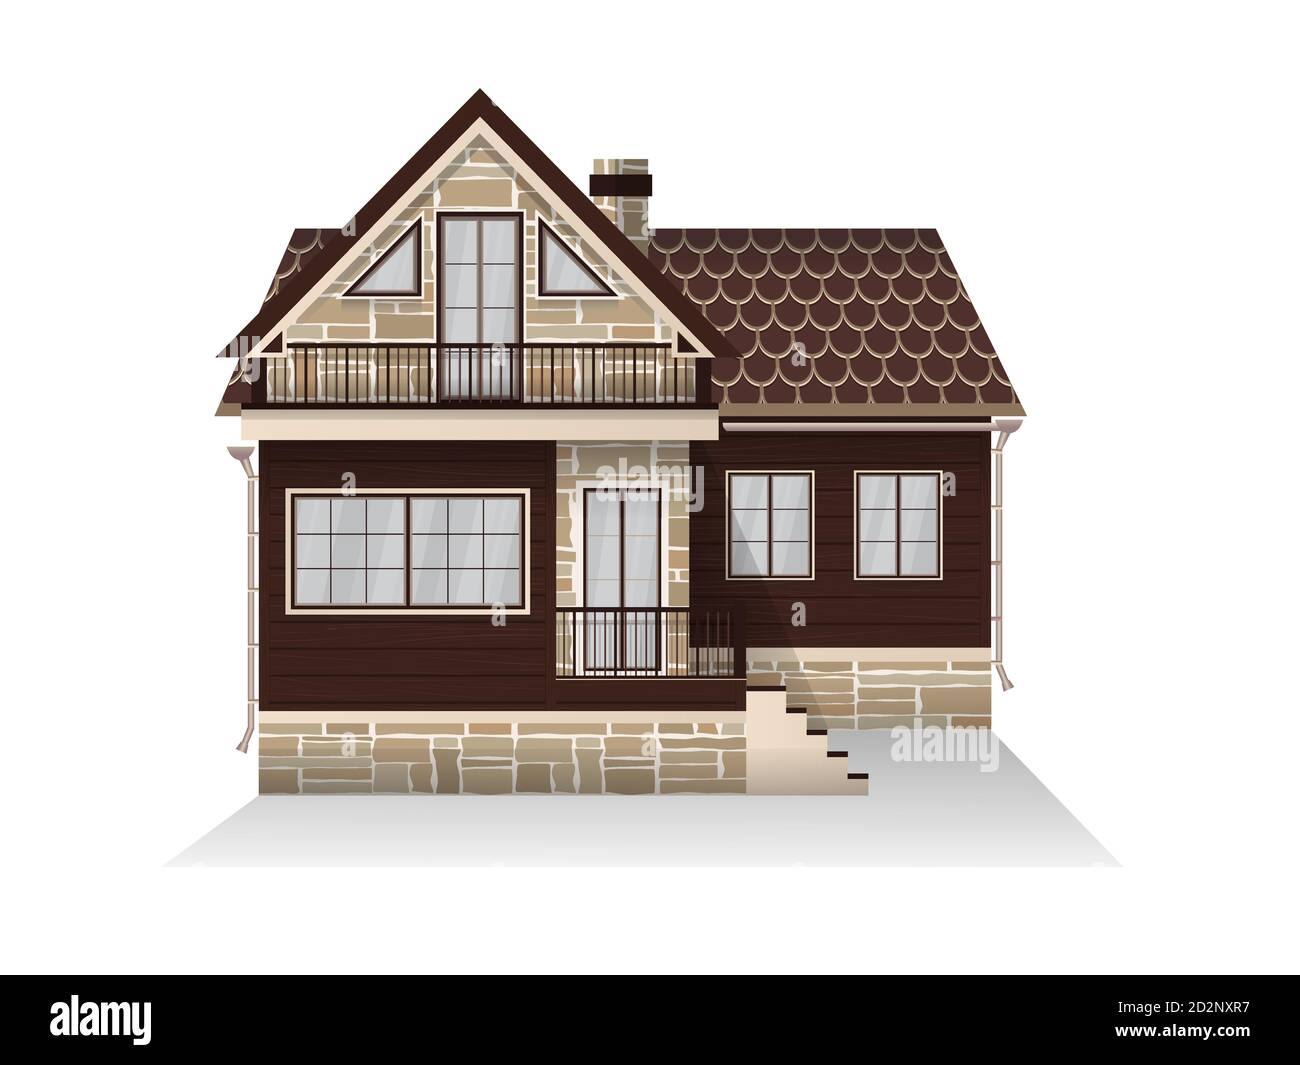 Illustrazione vettoriale di dettagliata casa di famiglia suburbana con mansarda. Casa di legno. Isolato su sfondo bianco. Illustrazione Vettoriale